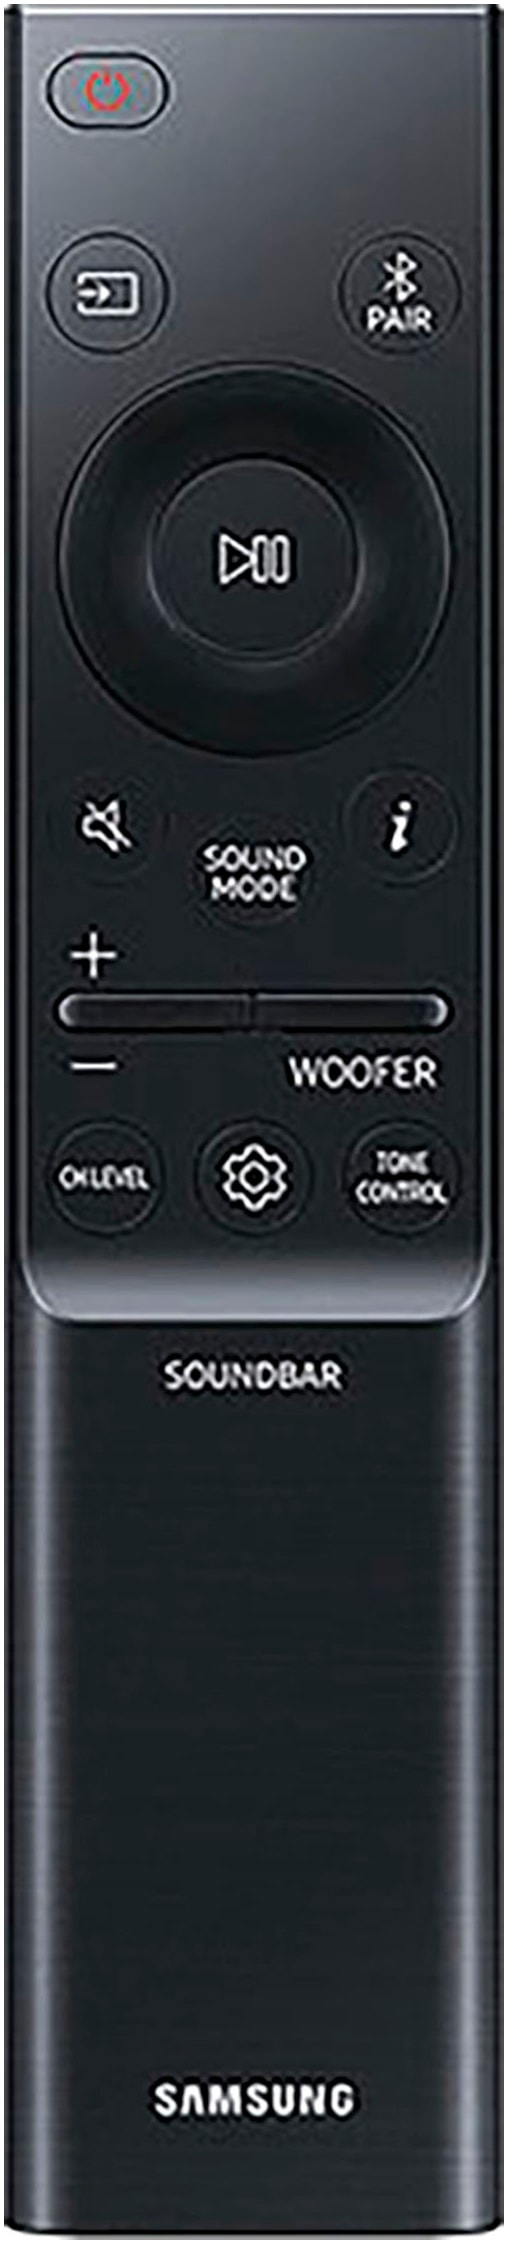 Samsung Soundbar »Q-Soundbar HW-Q810GD«